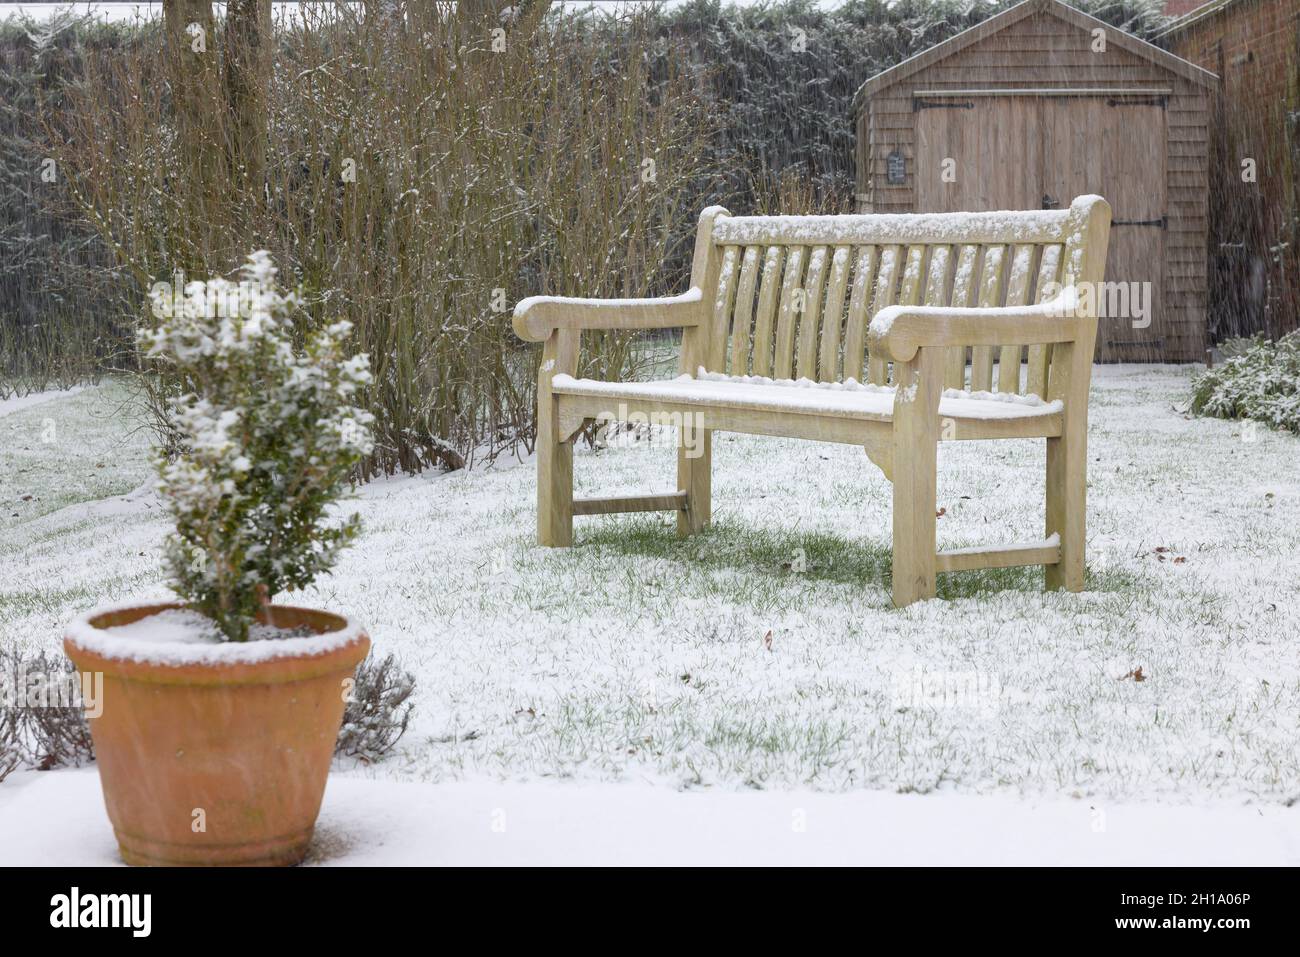 Arrière cour (arrière-cour) couverte de neige en hiver, avec un banc en bois de bois de teck sur la pelouse.Angleterre, Royaume-Uni Banque D'Images